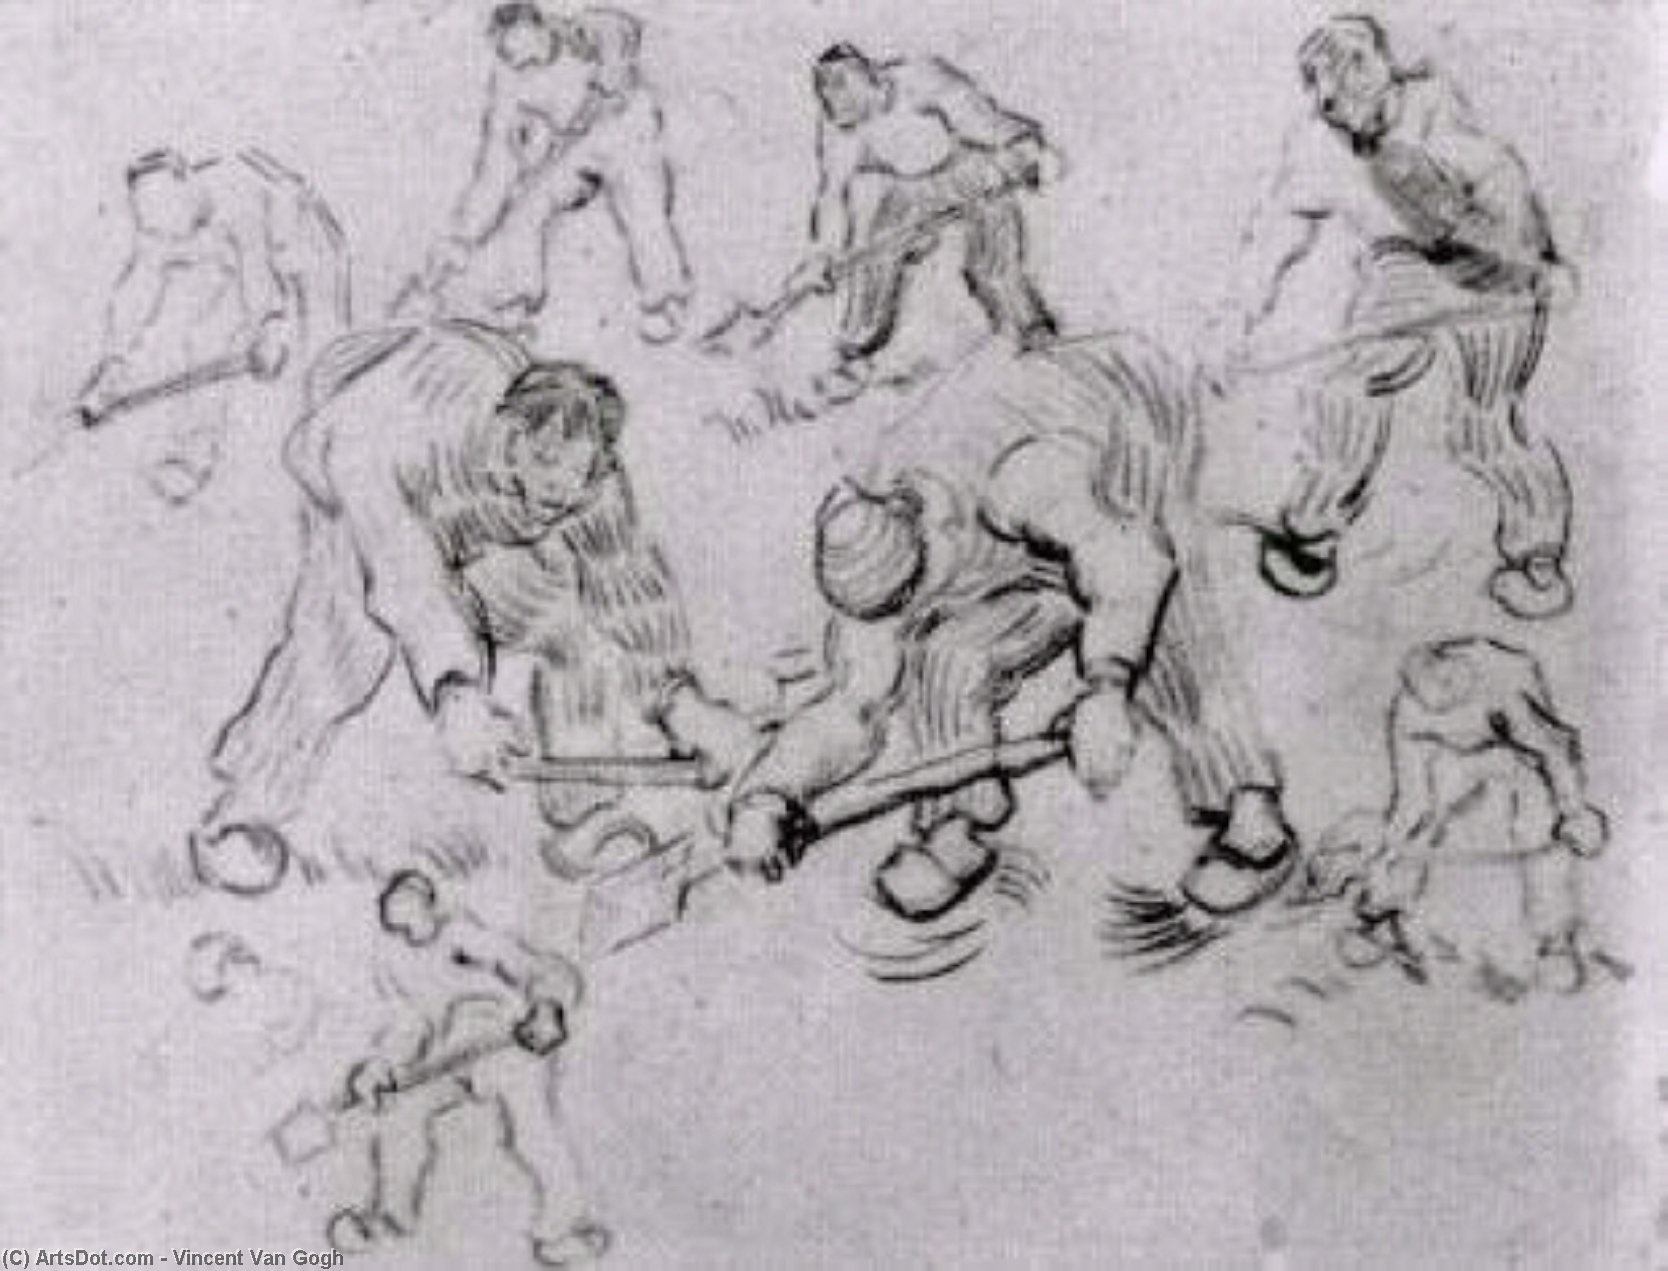 WikiOO.org - Enciklopedija likovnih umjetnosti - Slikarstvo, umjetnička djela Vincent Van Gogh - Sheet with Sketches of Diggers and Other Figures